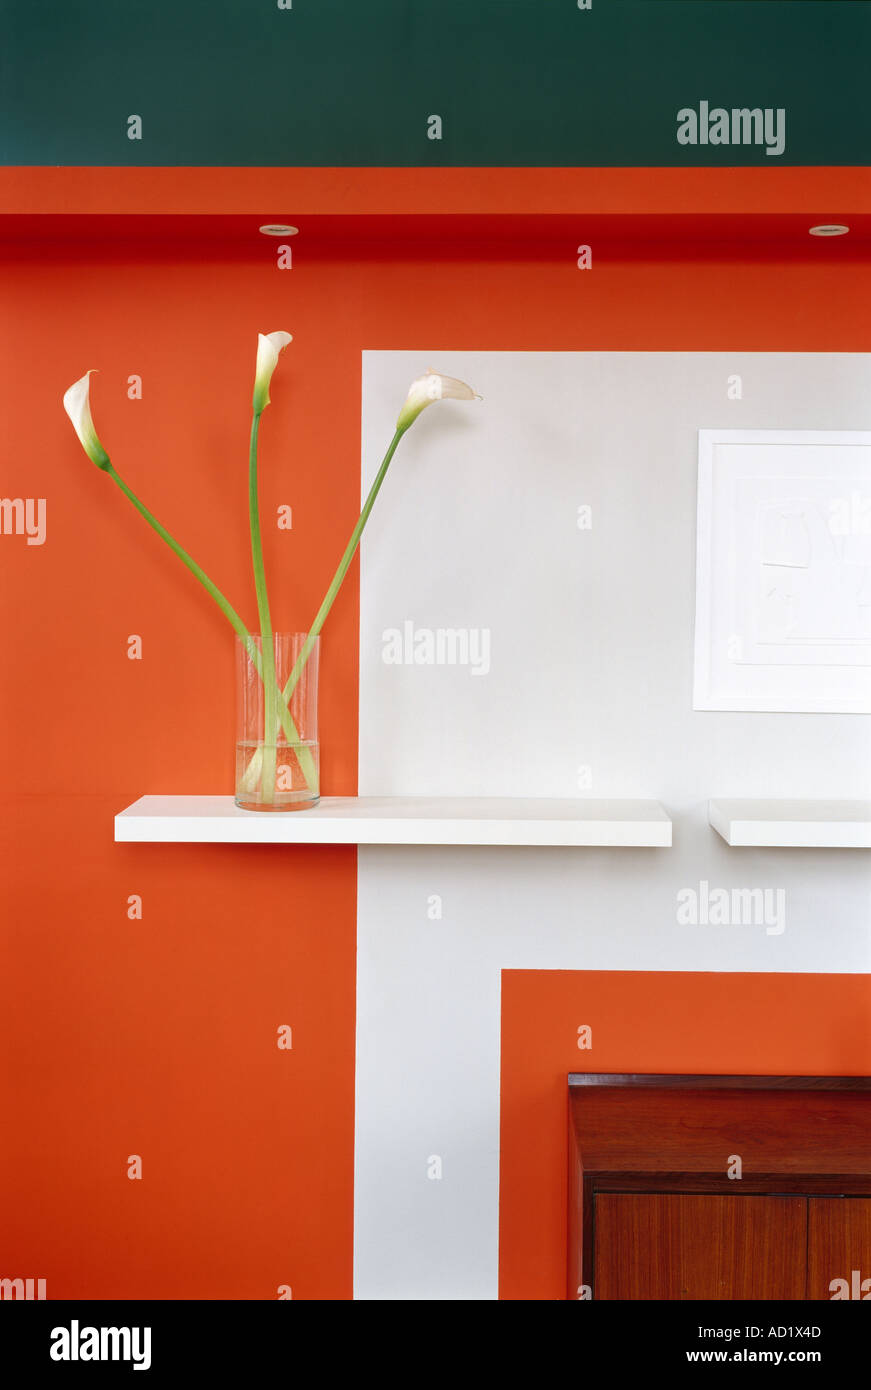 Orange wall with vase and shelves. Architect: Gareth Hoskins Architects Stock Photo